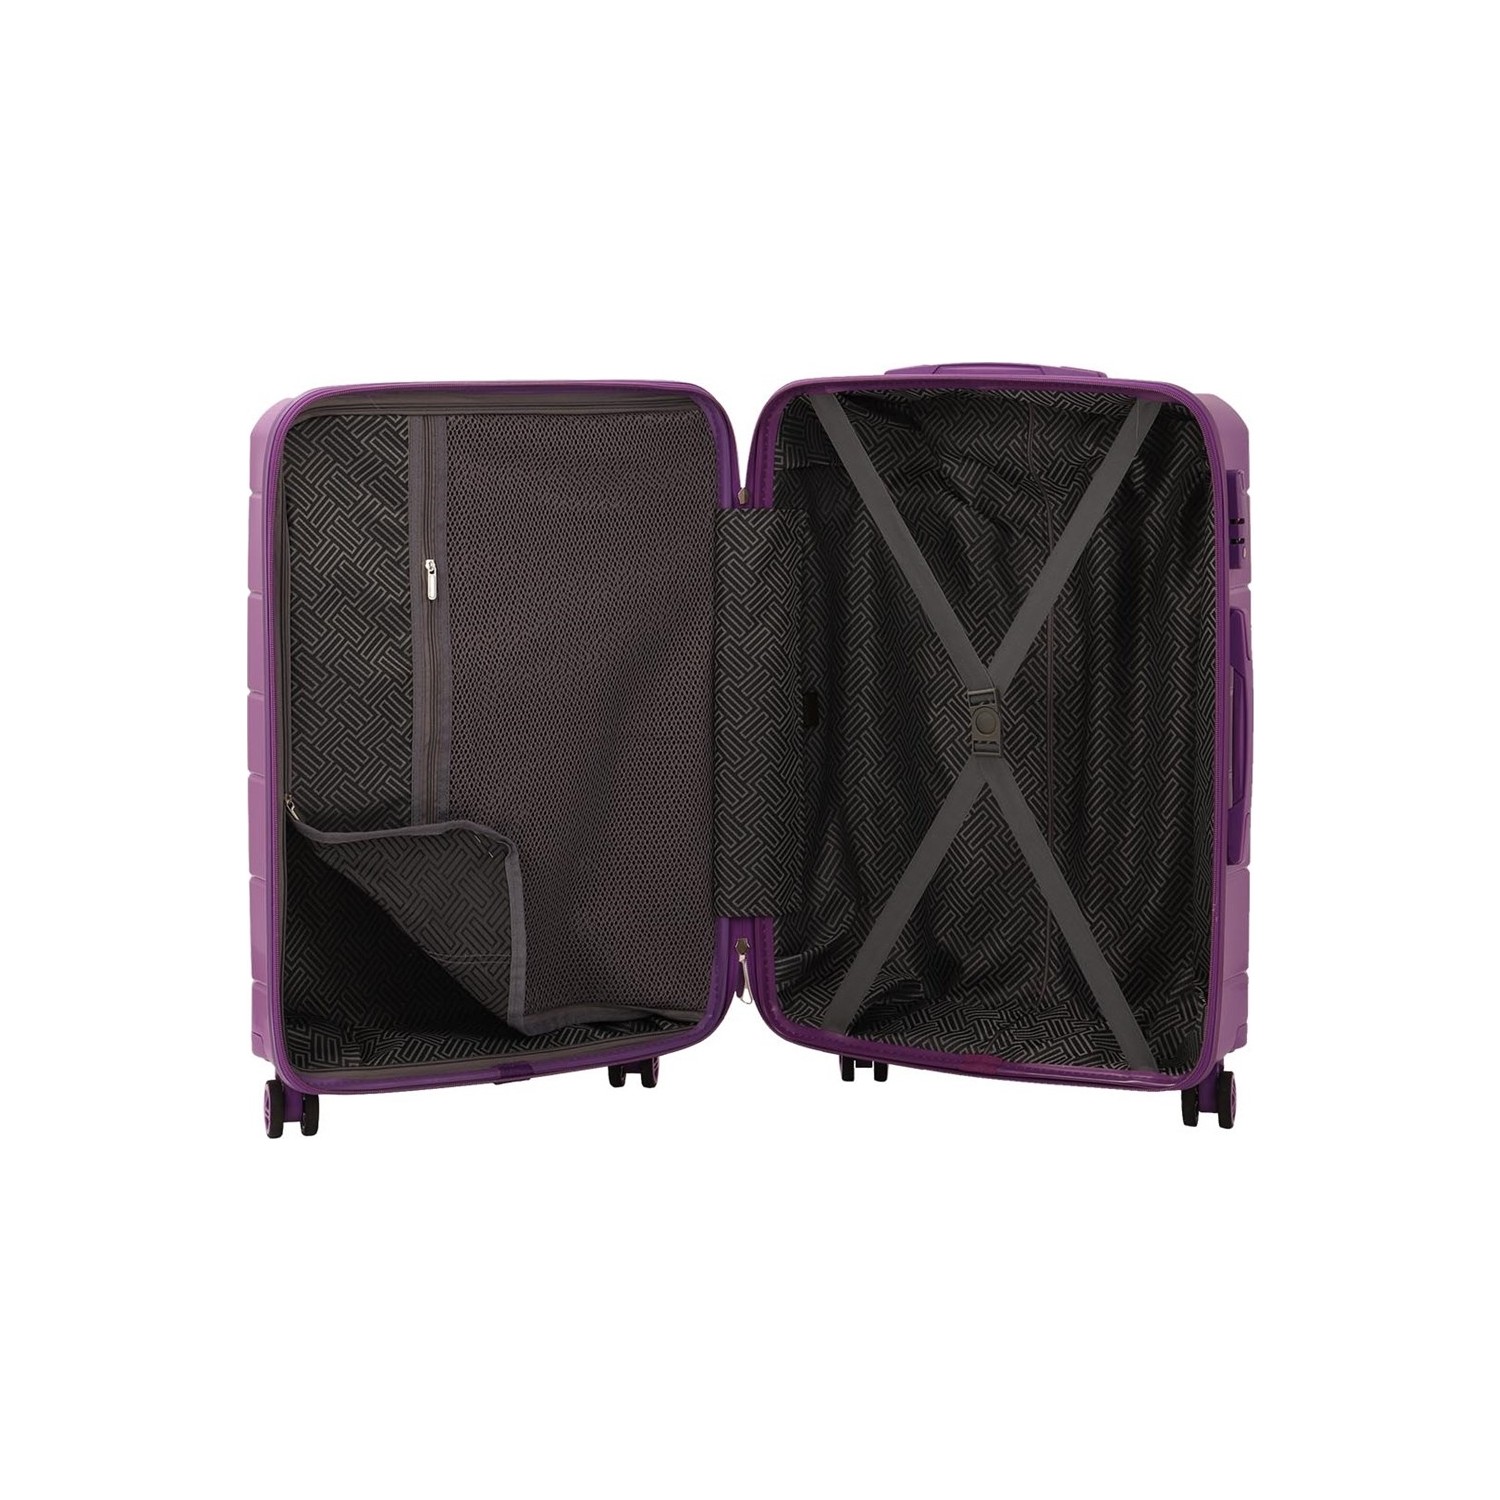 Маленький чемодан для ручьной клади из полипропилена MCS V366 S CHAMPAGE! Для 8-10 кг! - 2